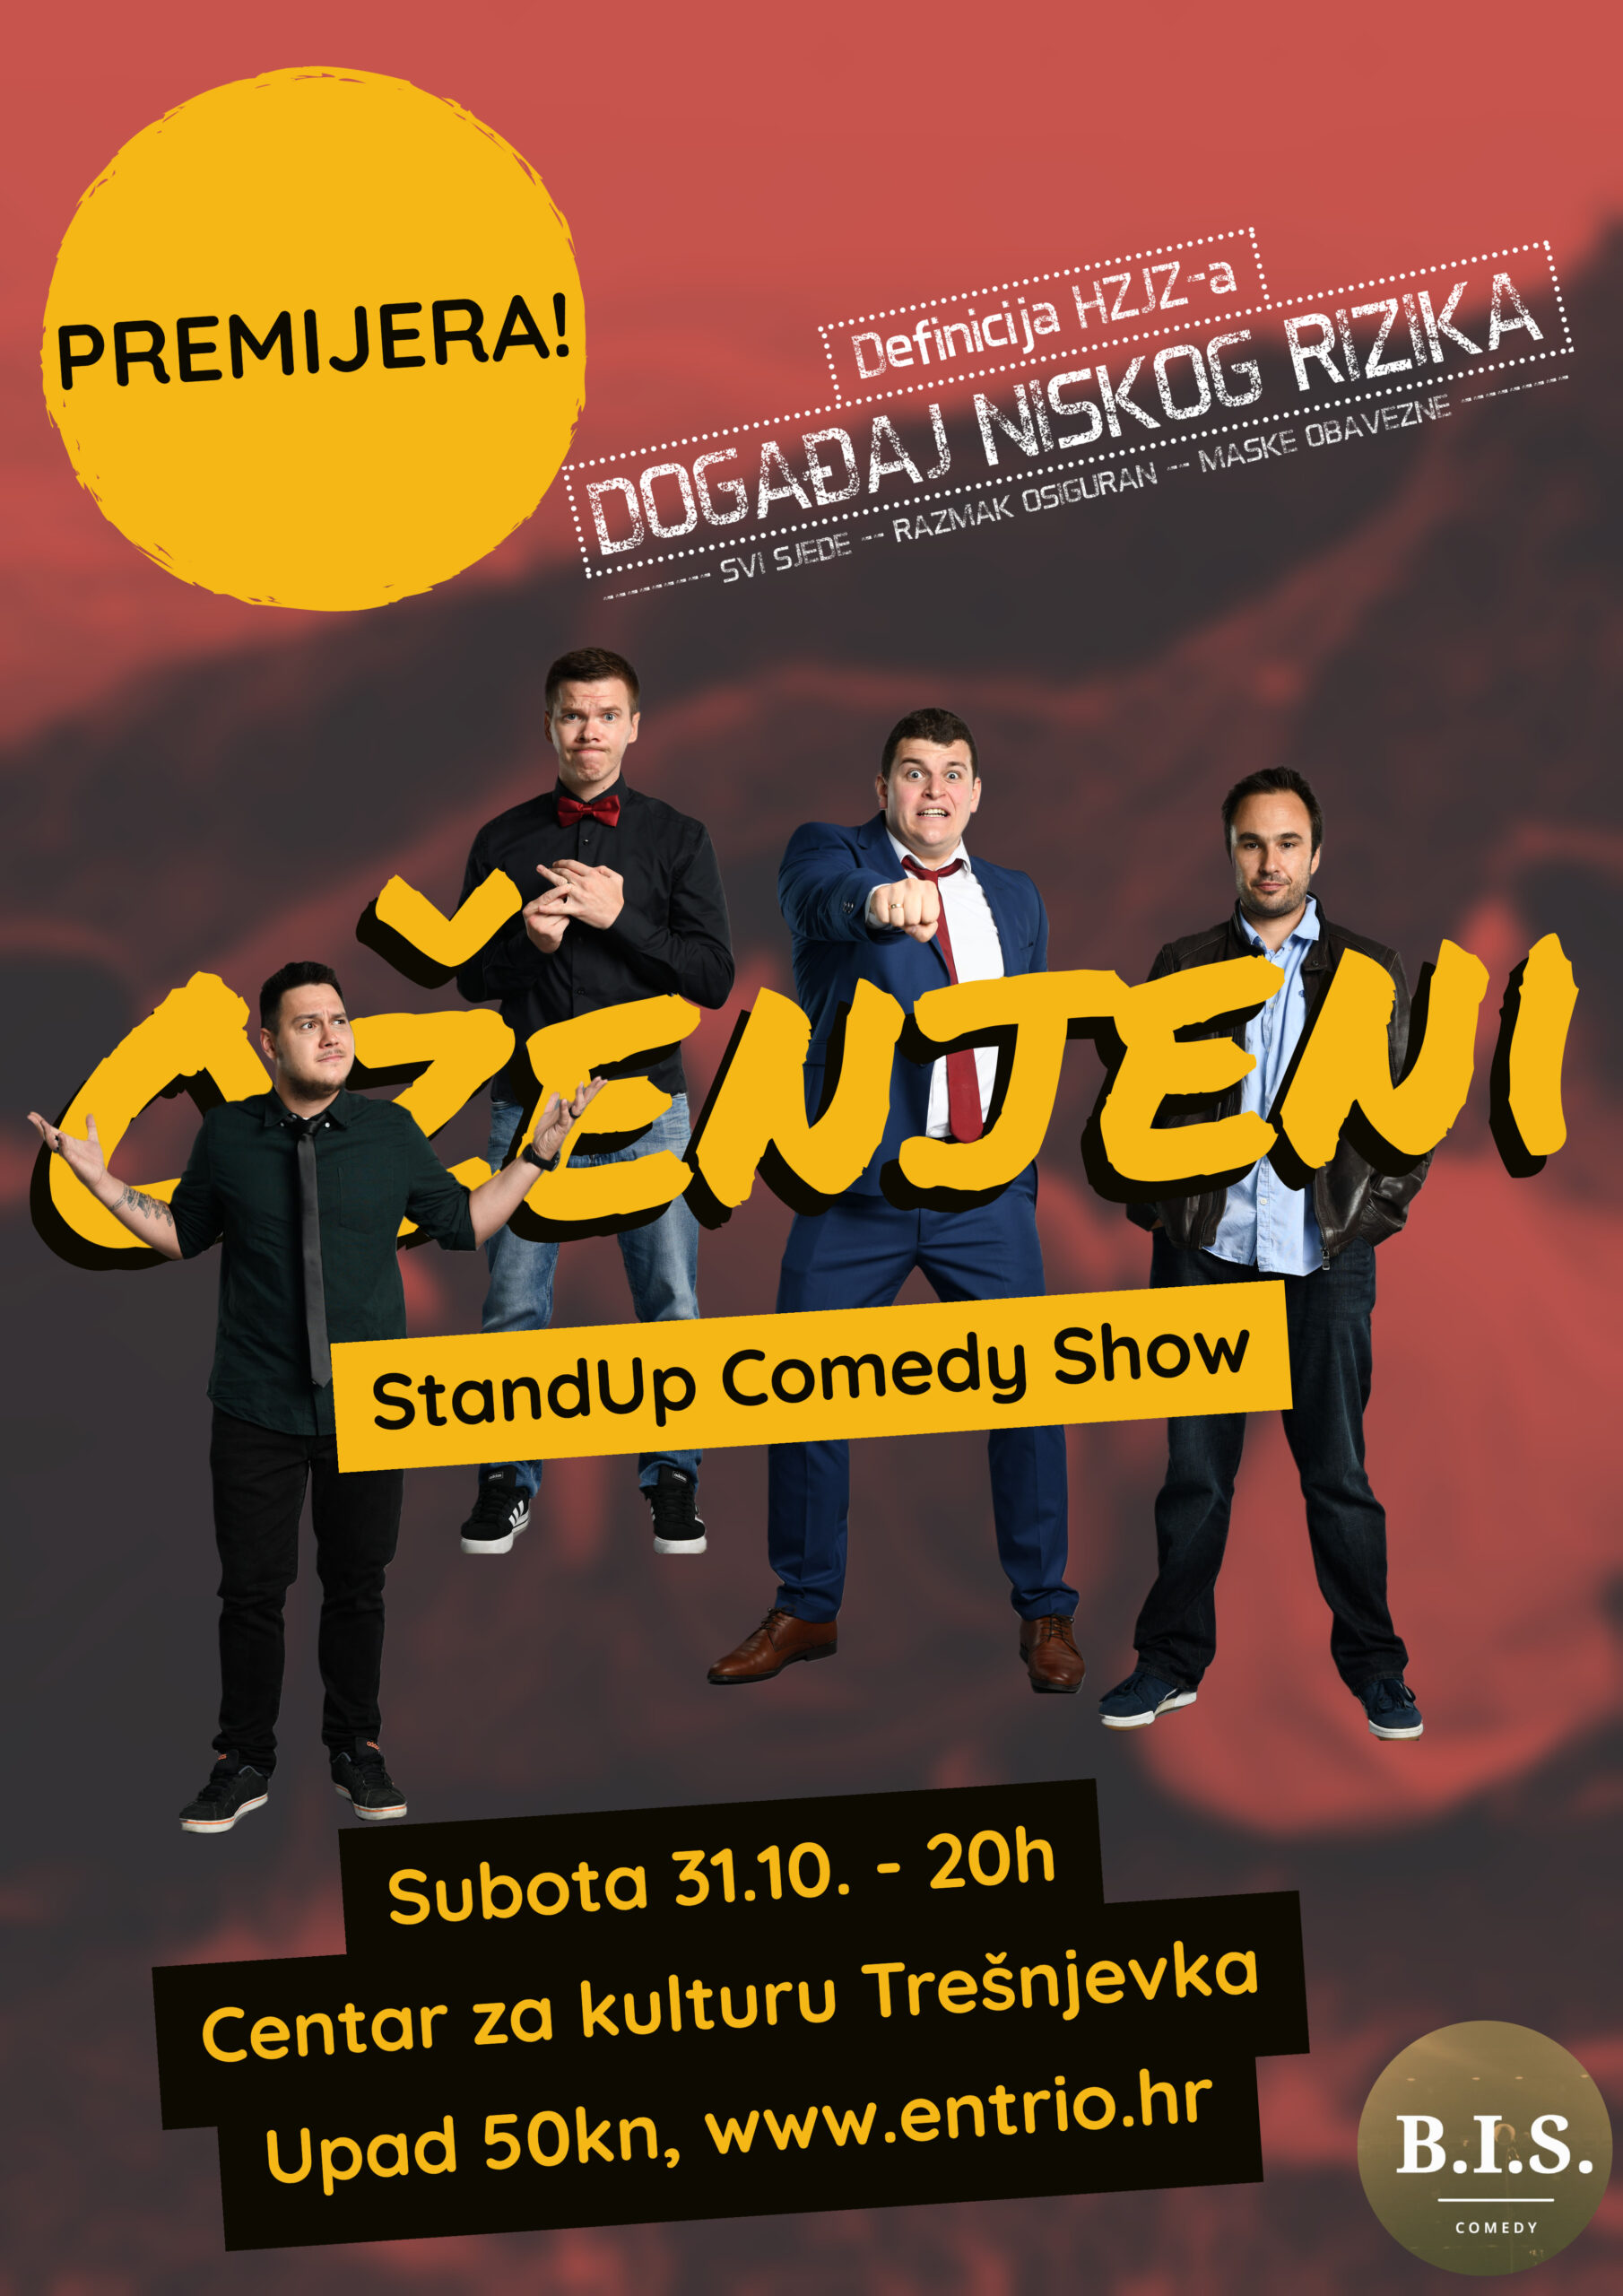 Oženjeni – stand up comedy show